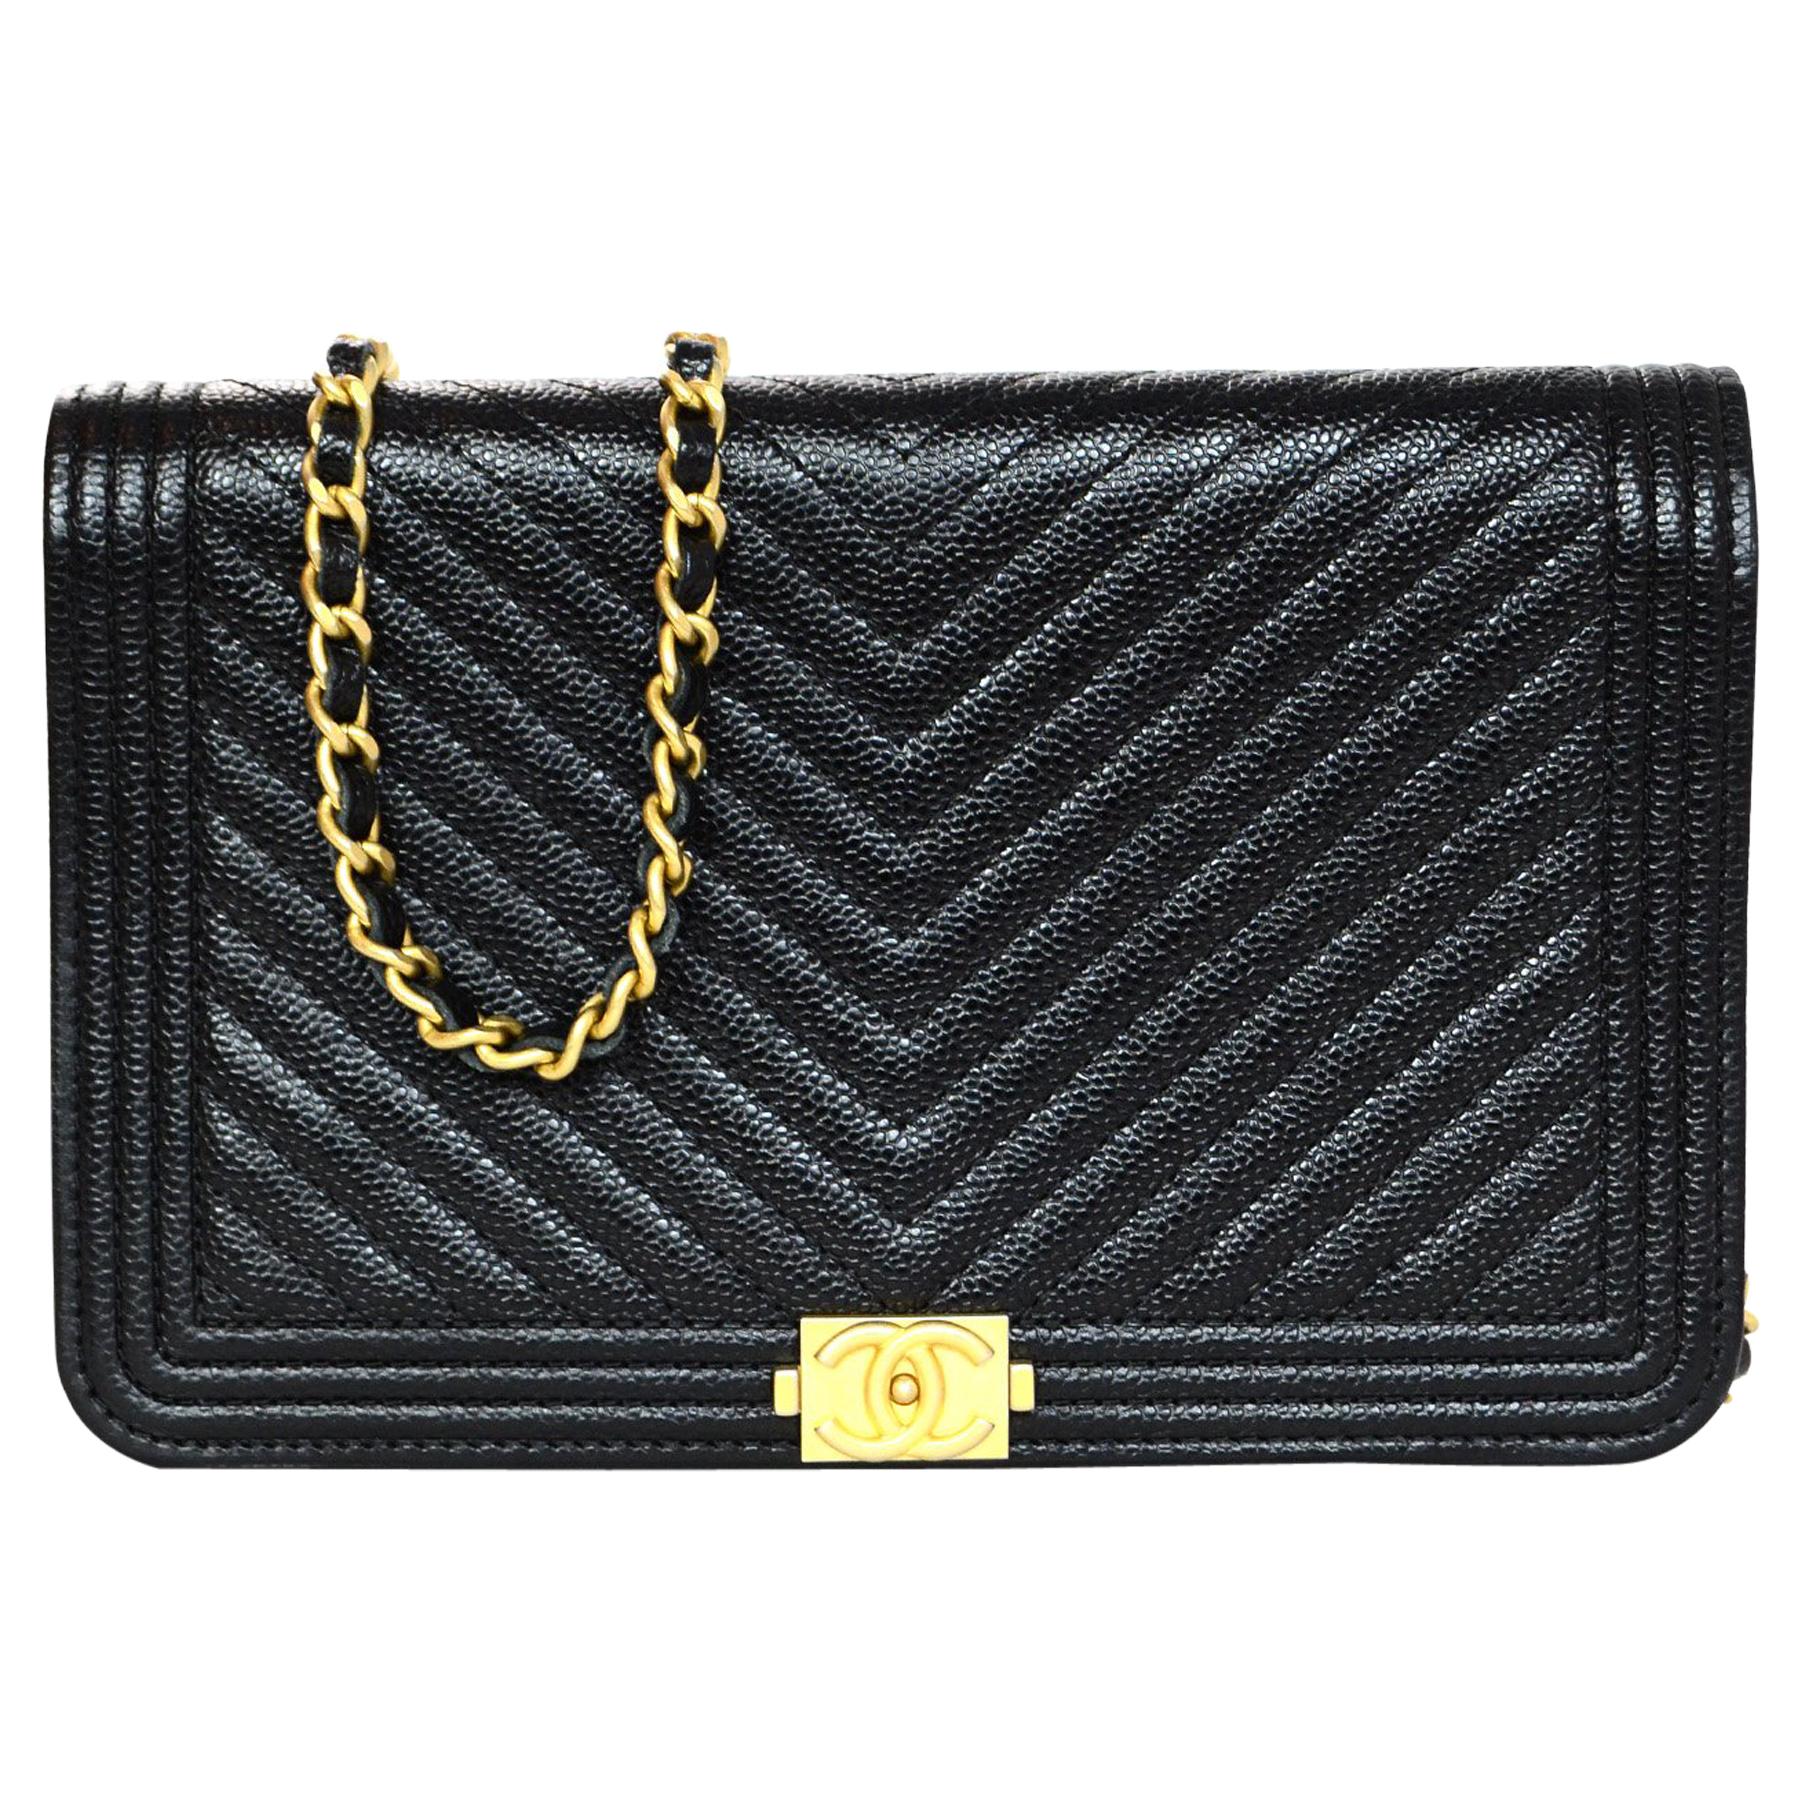 Chanel 2018 Black Caviar Leather Boy WOC Wallet on a Chain Crossbody Bag